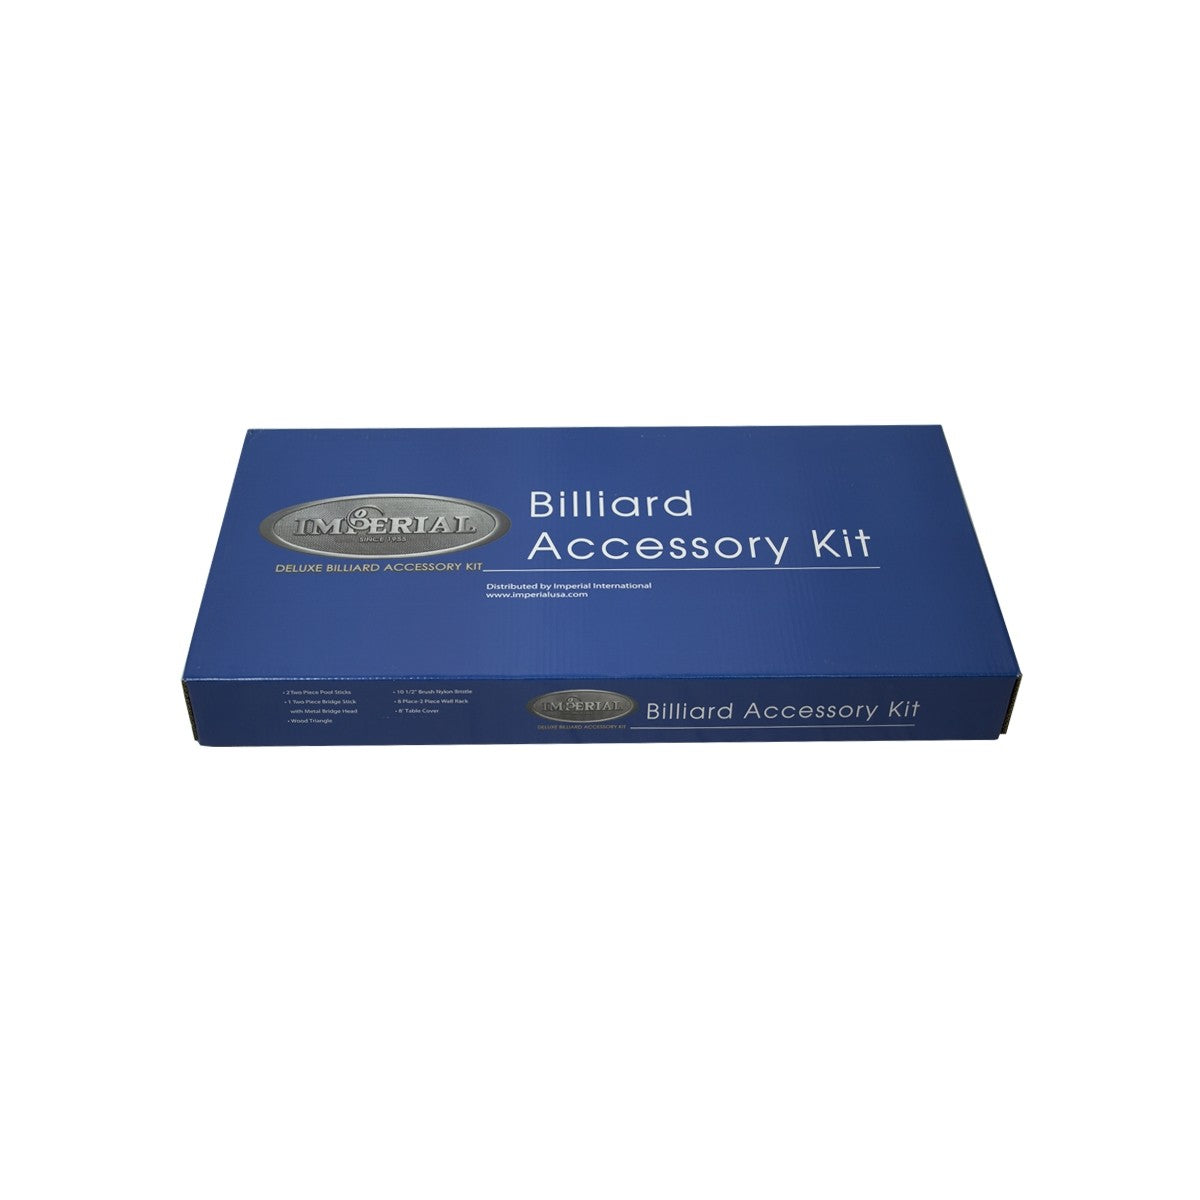 Imperial Silver Accessory Kit, Mahogany